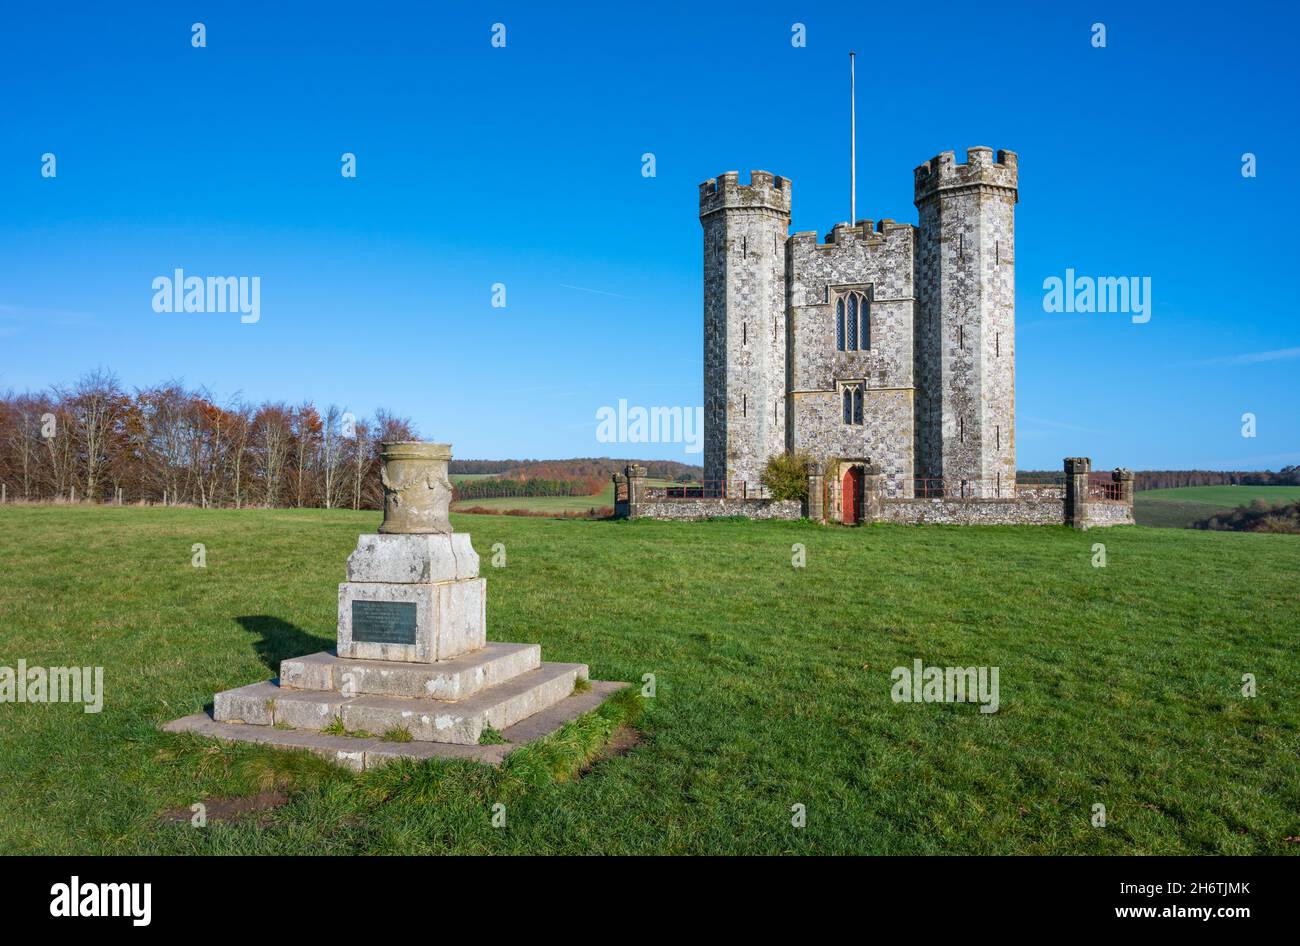 Monumento al sitio de 1855 presentado por el Almirante Lord Lyons a Henry Granville, Duque de Norfolk, y Torre Hiorne (Folly) en Arundel Park, West Sussex, Reino Unido. Foto de stock